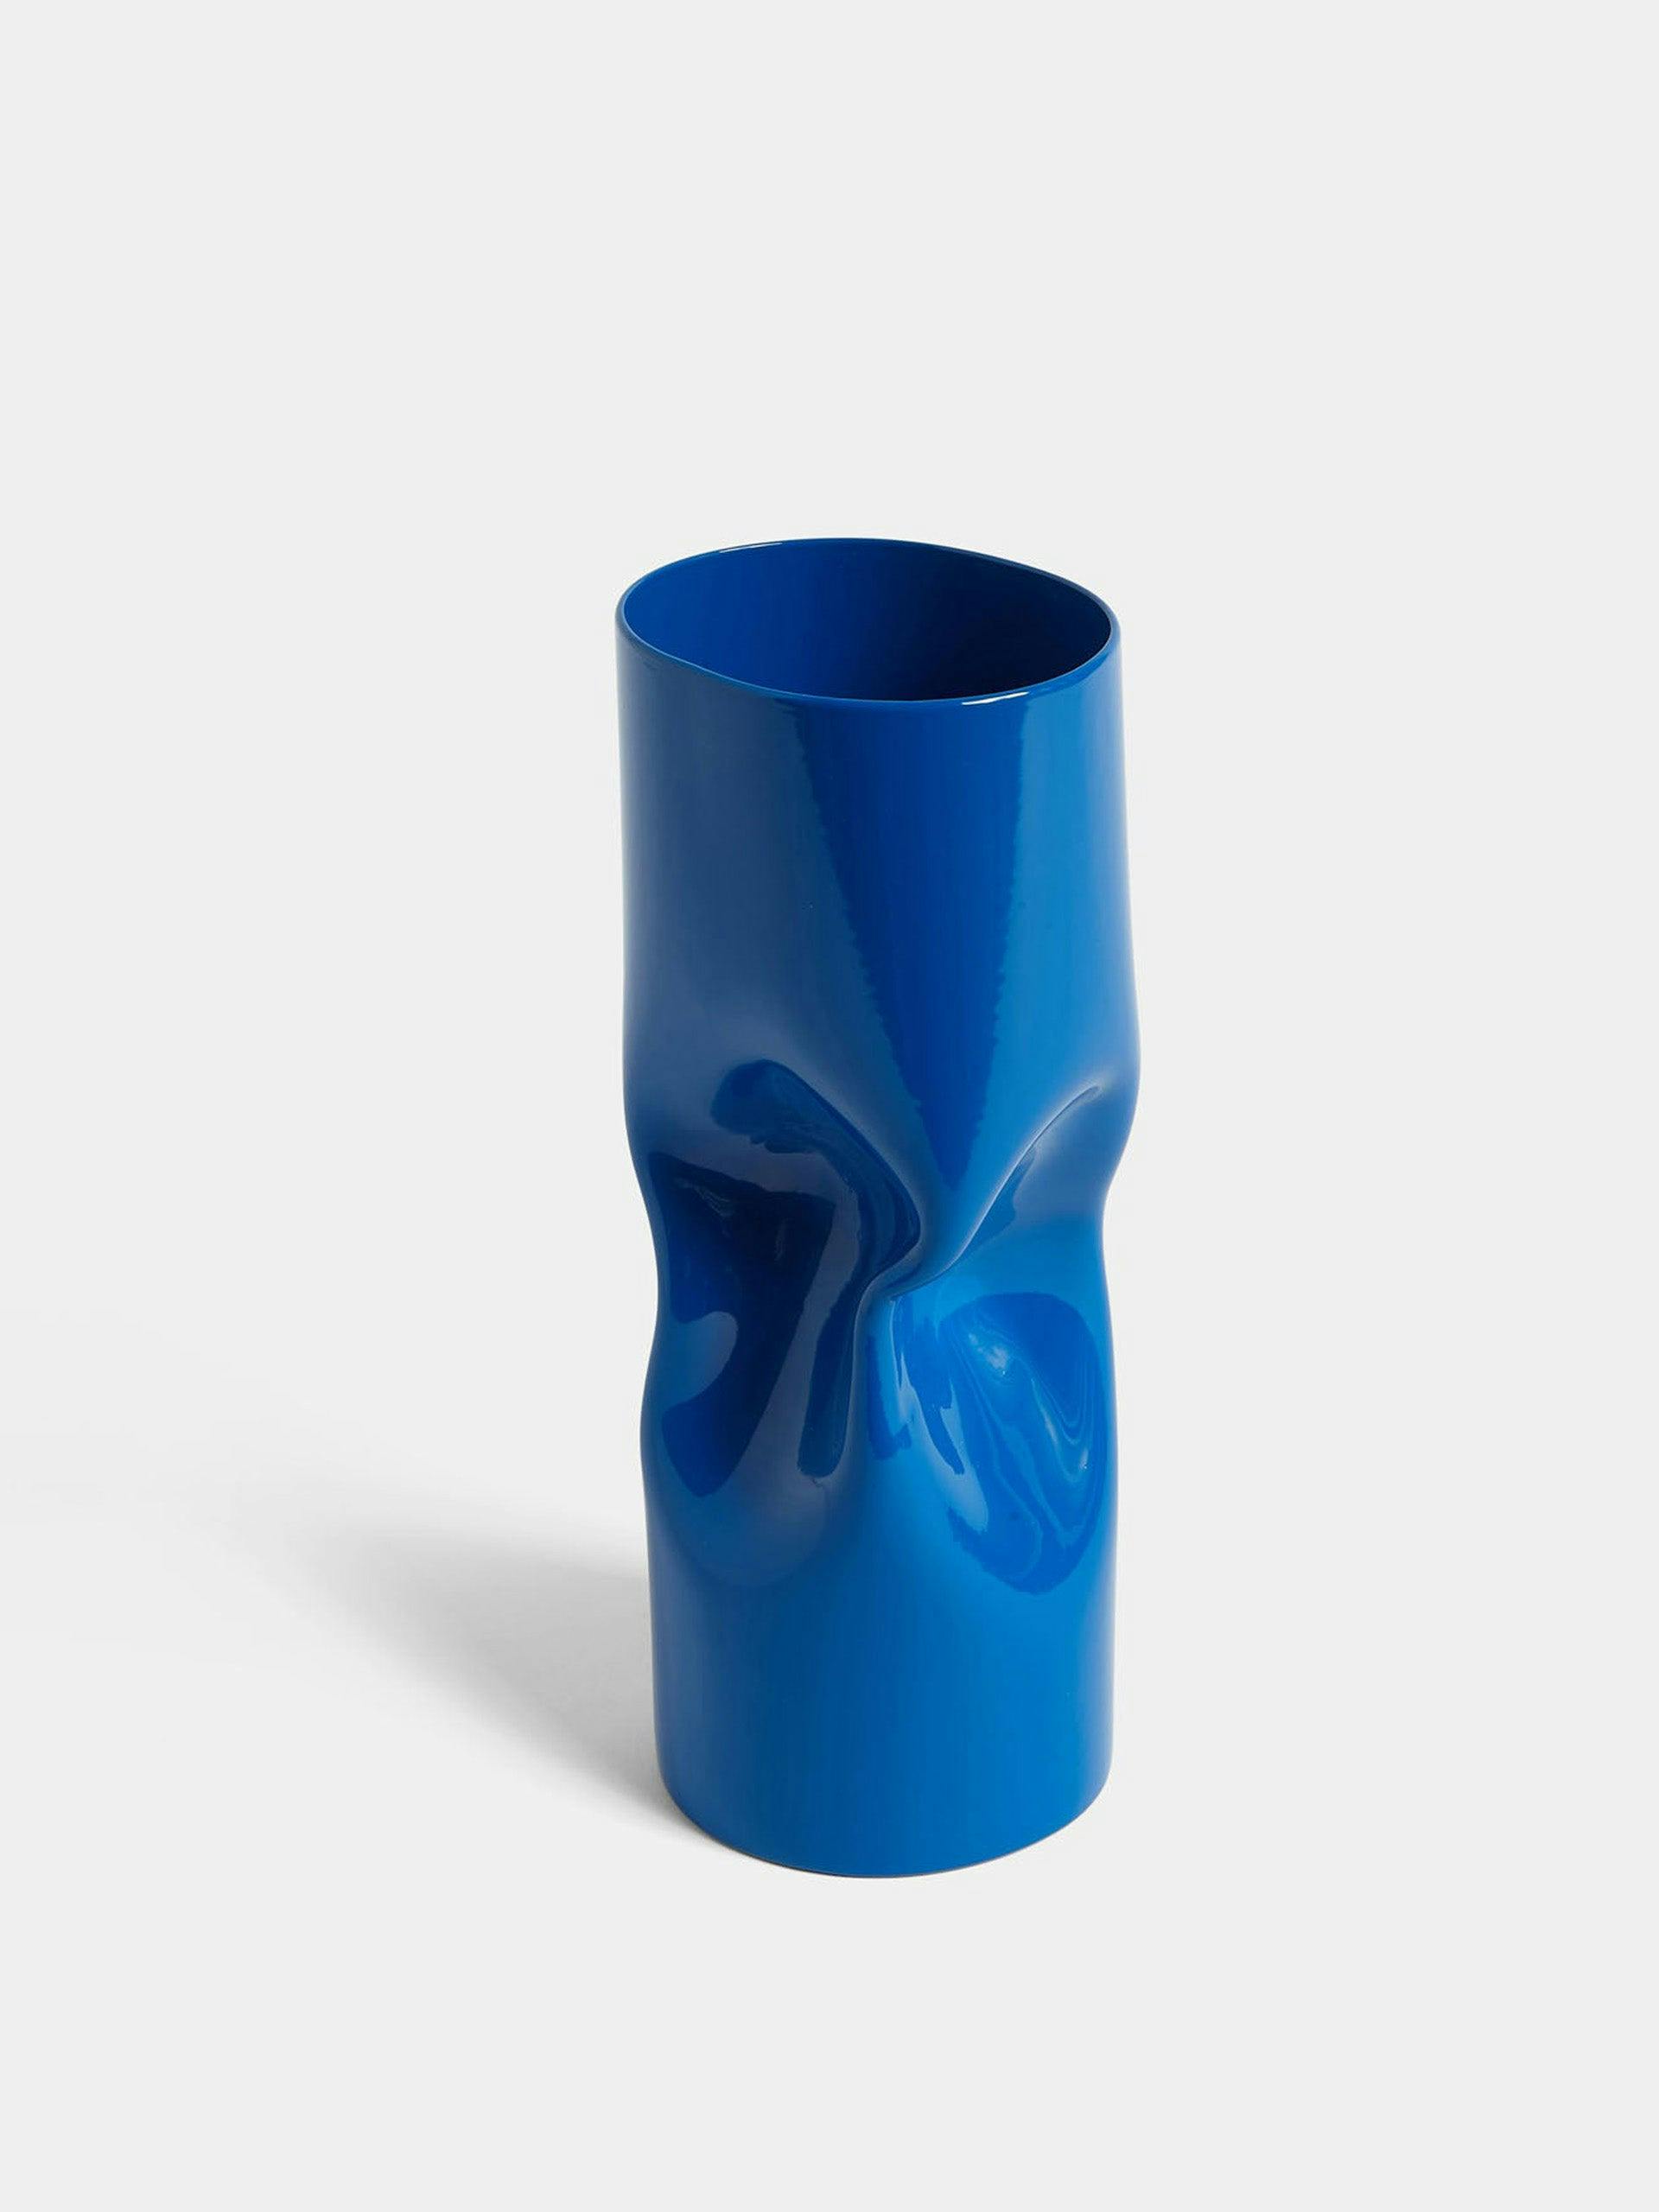 Twisted vase